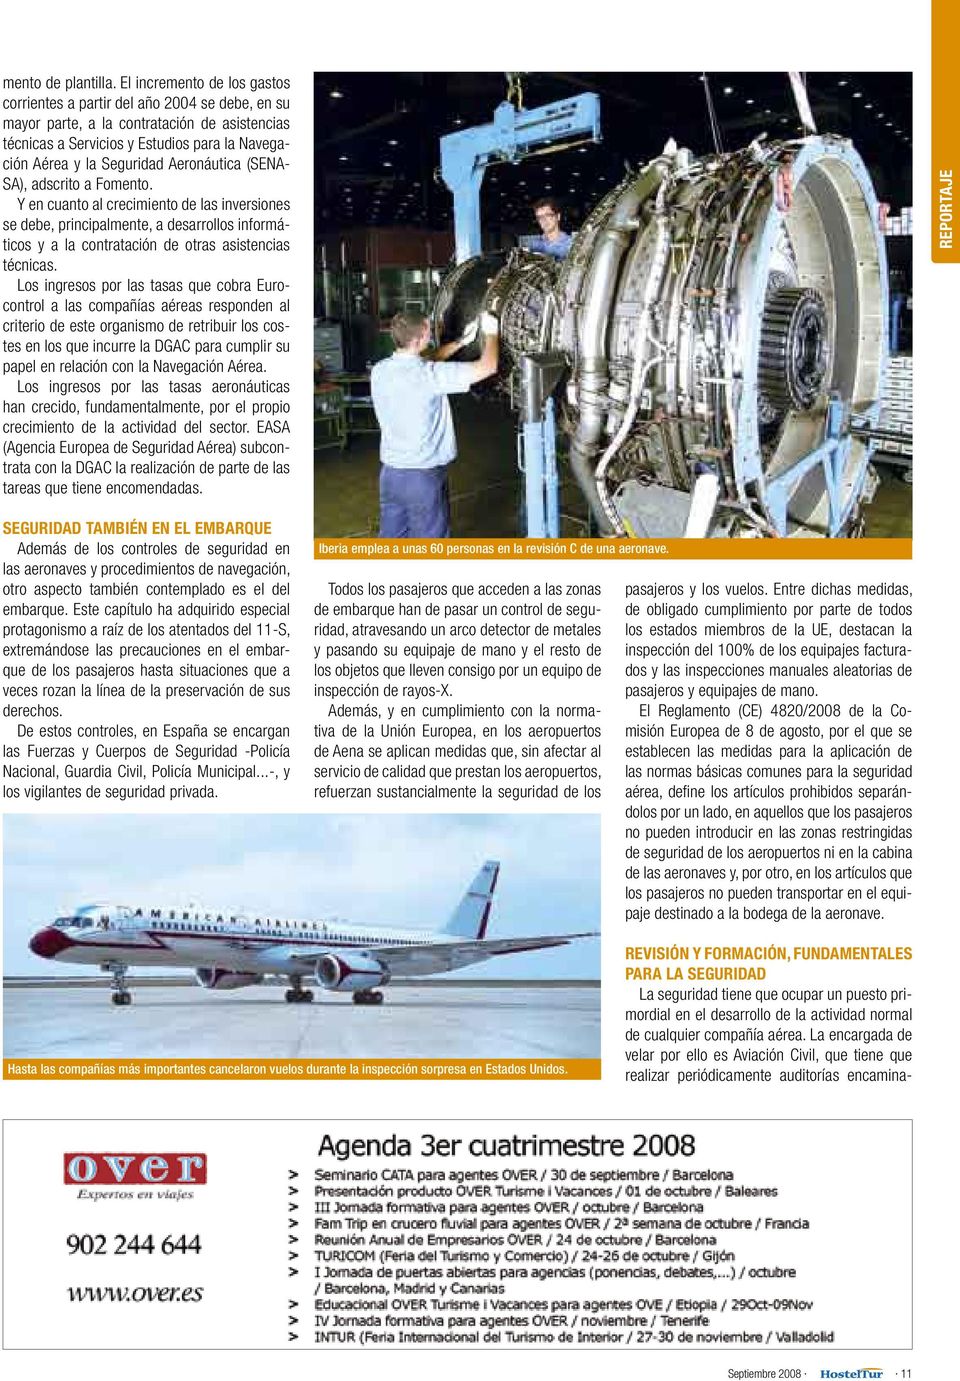 Aeronáutica (SENA- SA), adscrito a Fomento. Y en cuanto al crecimiento de las inversiones se debe, principalmente, a desarrollos informáticos y a la contratación de otras asistencias técnicas.